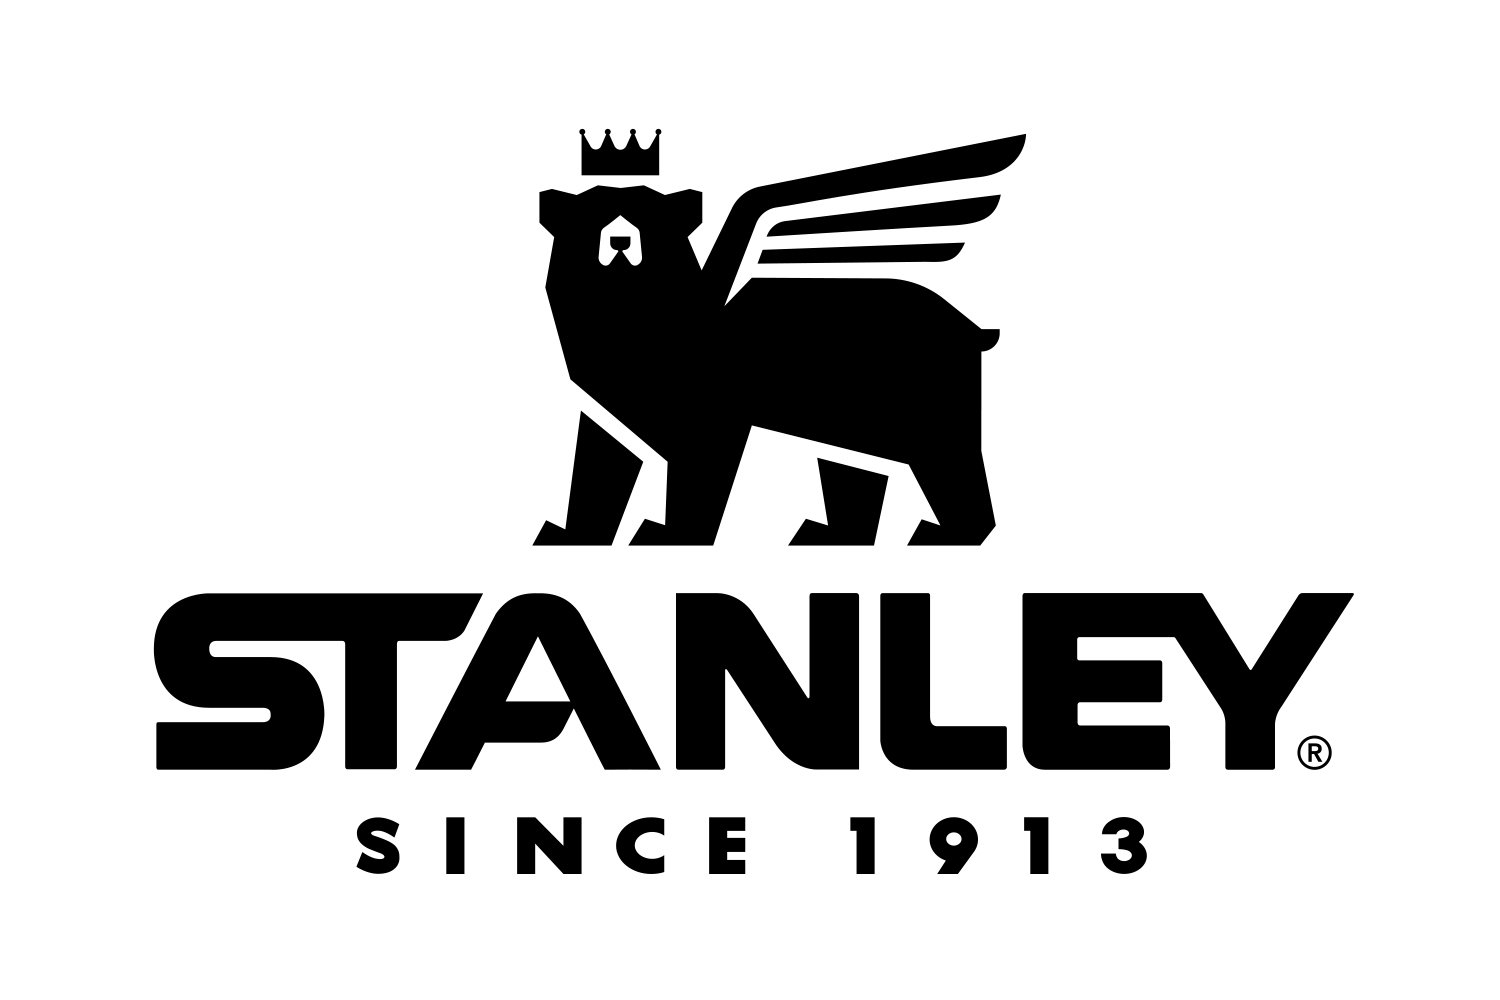 Stanley_Wingbear_Logo_1913_K.jpg